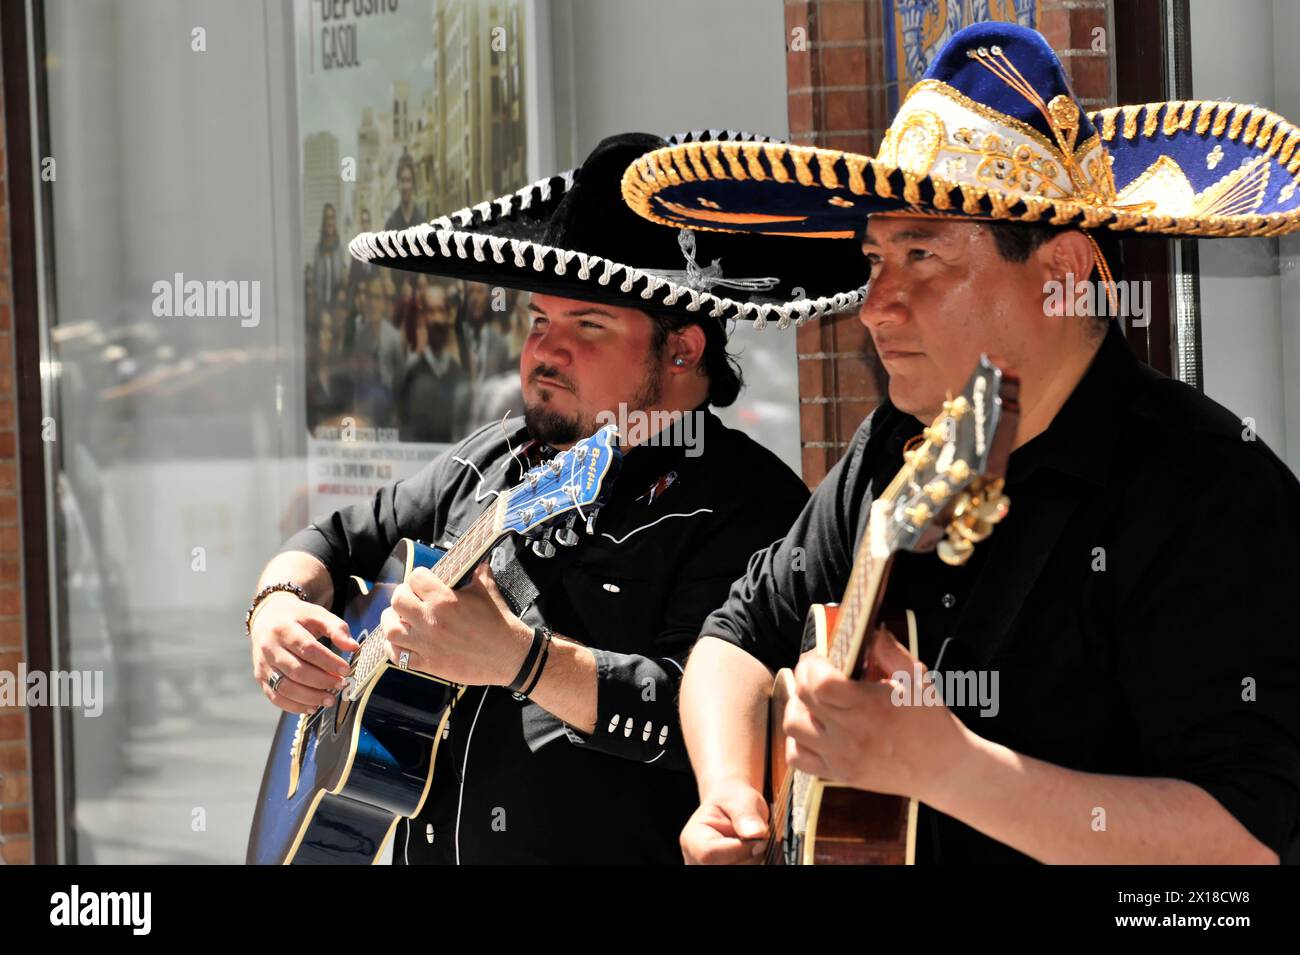 Séville, deux musiciens dans les sombreros mexicains traditionnels jouant de la guitare, Séville, Andalousie, Sud de l'Espagne, Espagne Banque D'Images